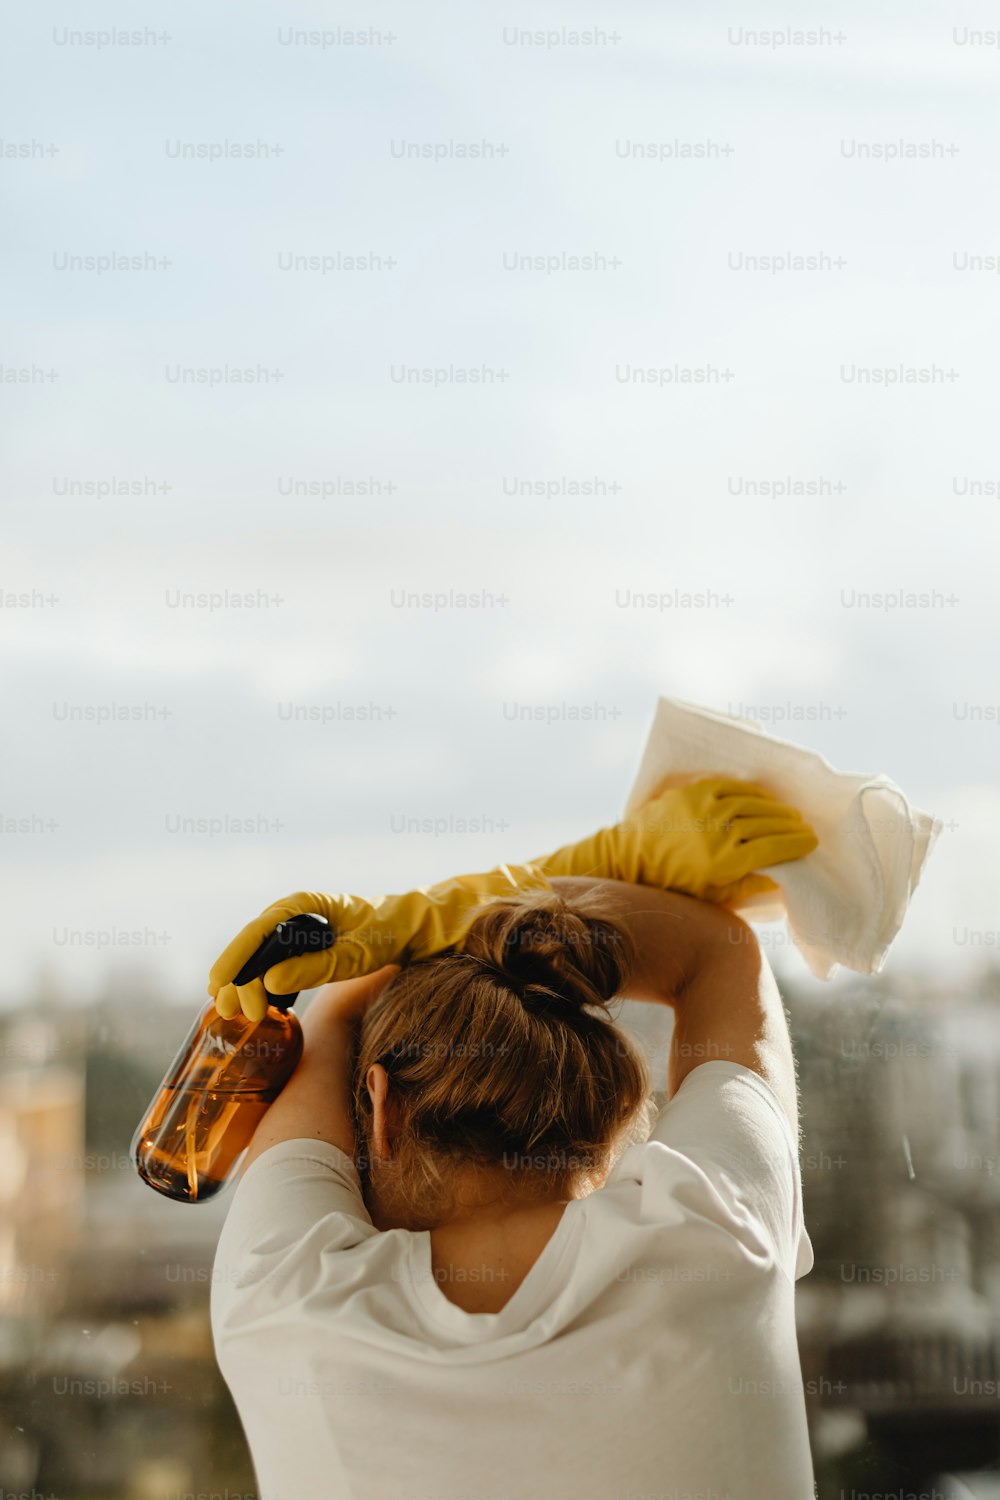 Una donna con un guanto giallo in testa